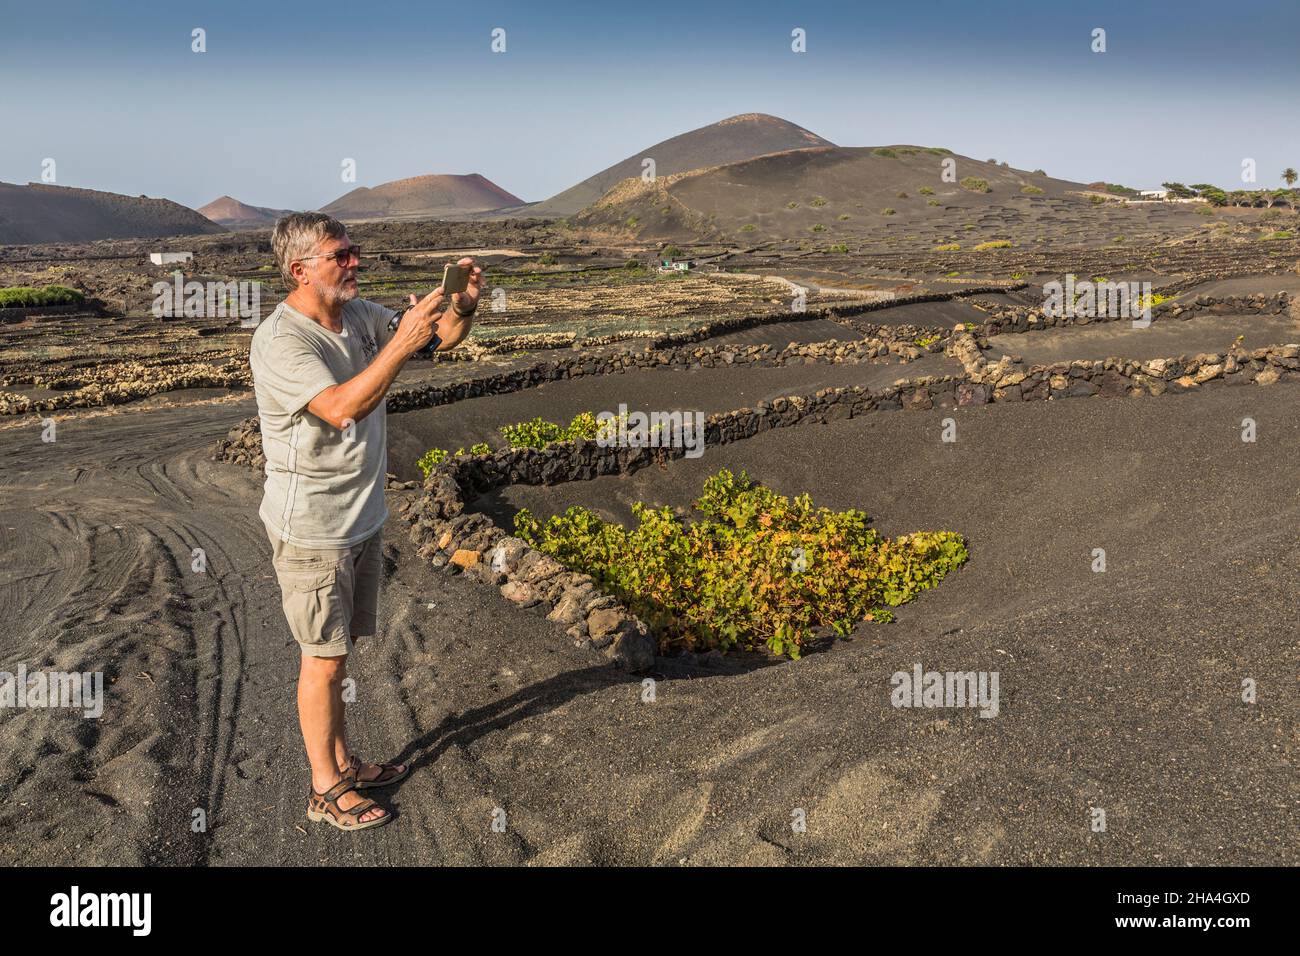 homme de 63 ans photographie les vignes avec son smartphone, viticulture, méthode de construction sèche, paysage volcanique près de la geria, lanzarote, îles canaries, espagne, europe Banque D'Images